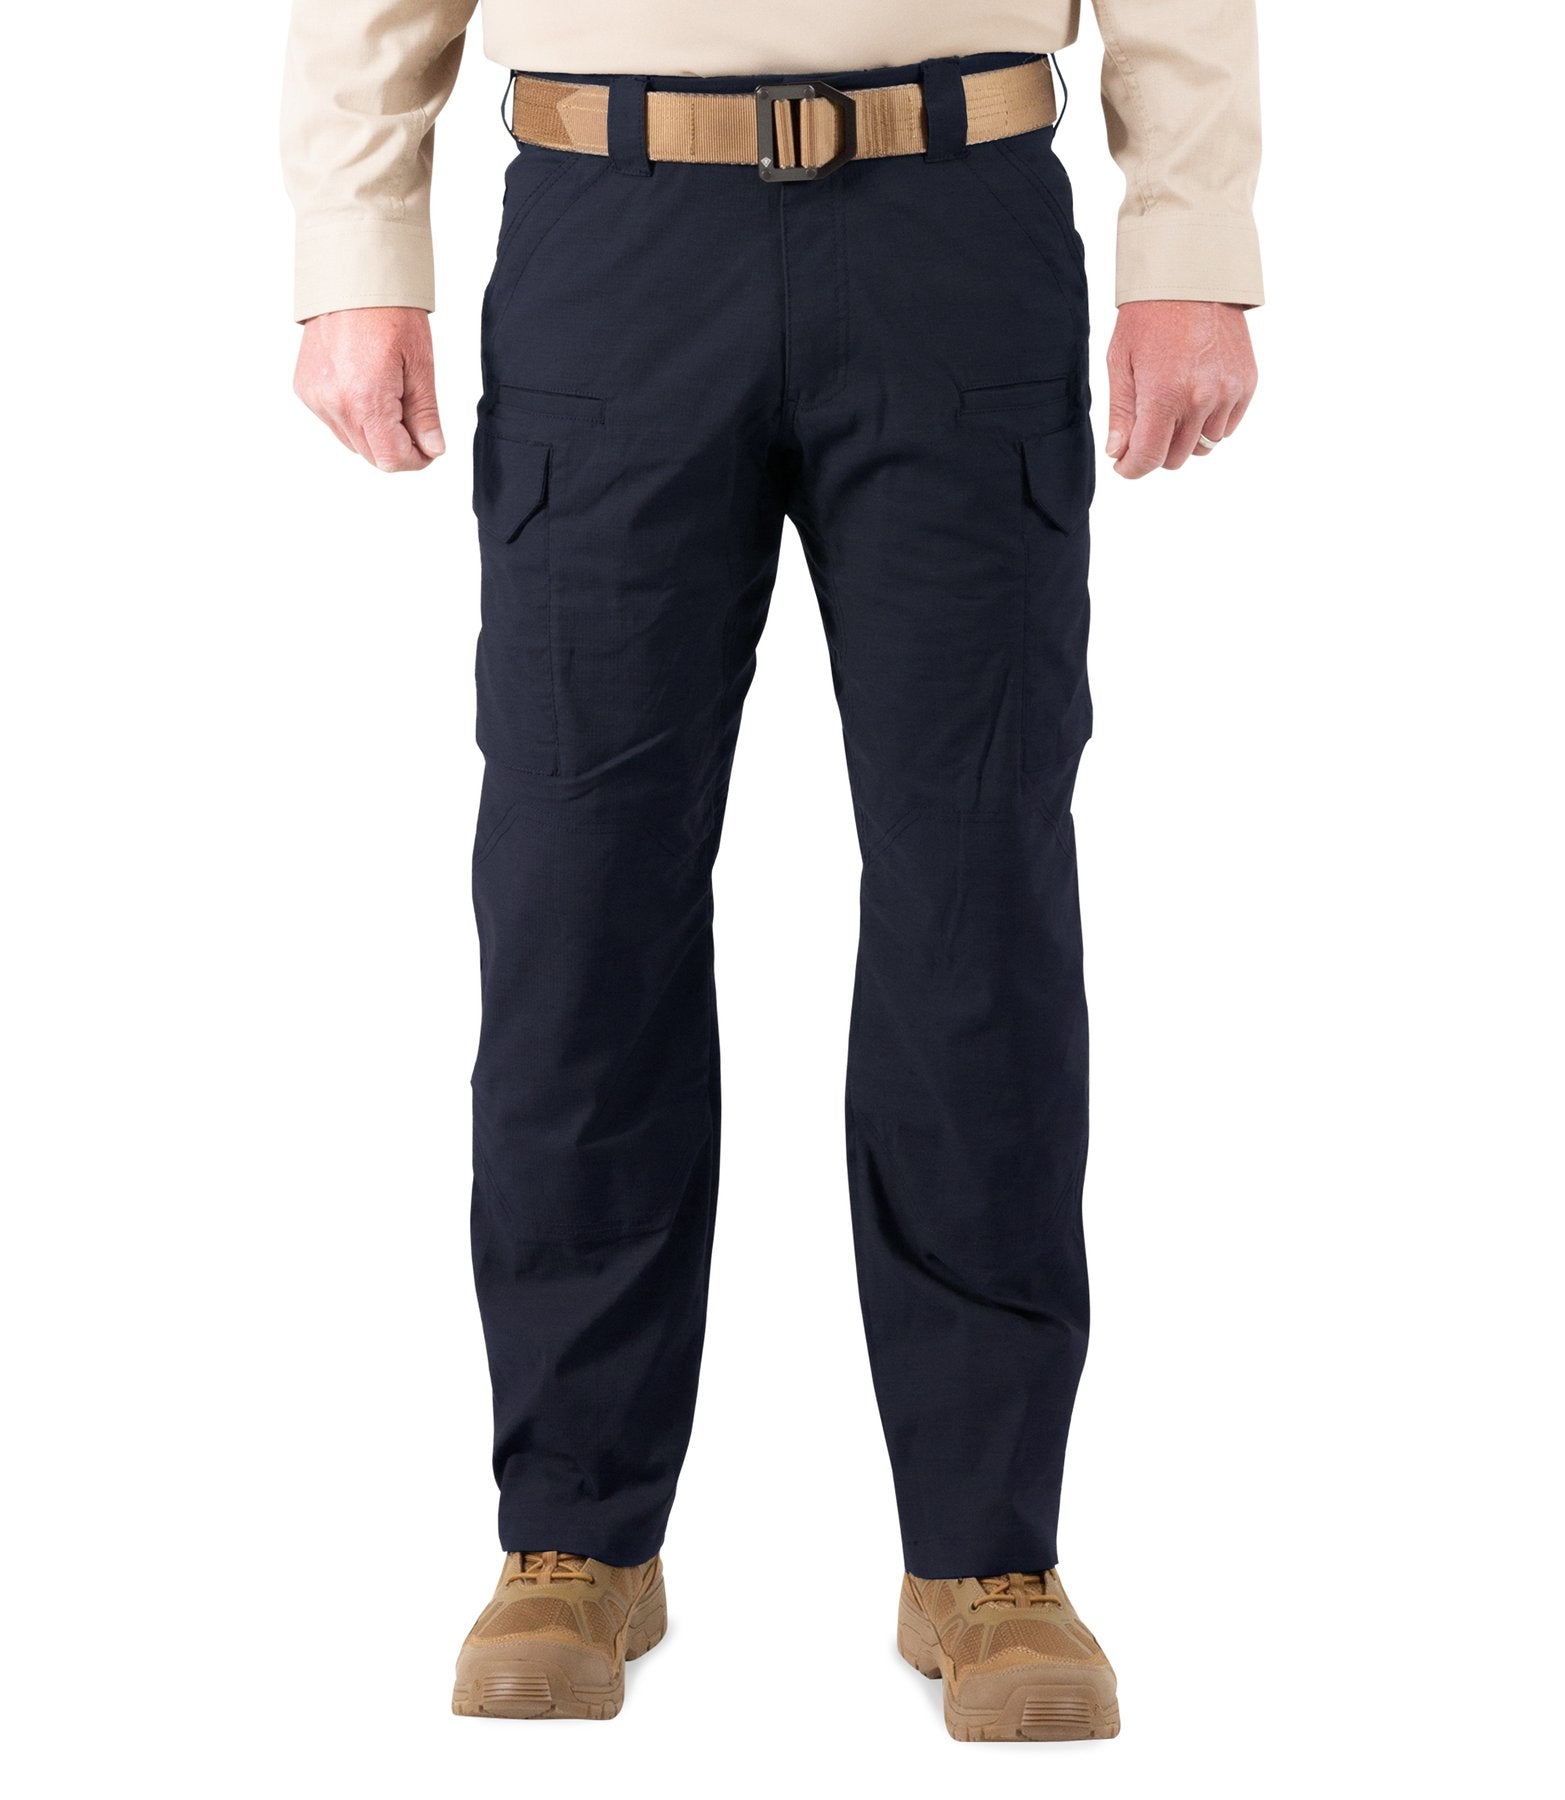 First Tactical V2 Tactical Pants - Mens